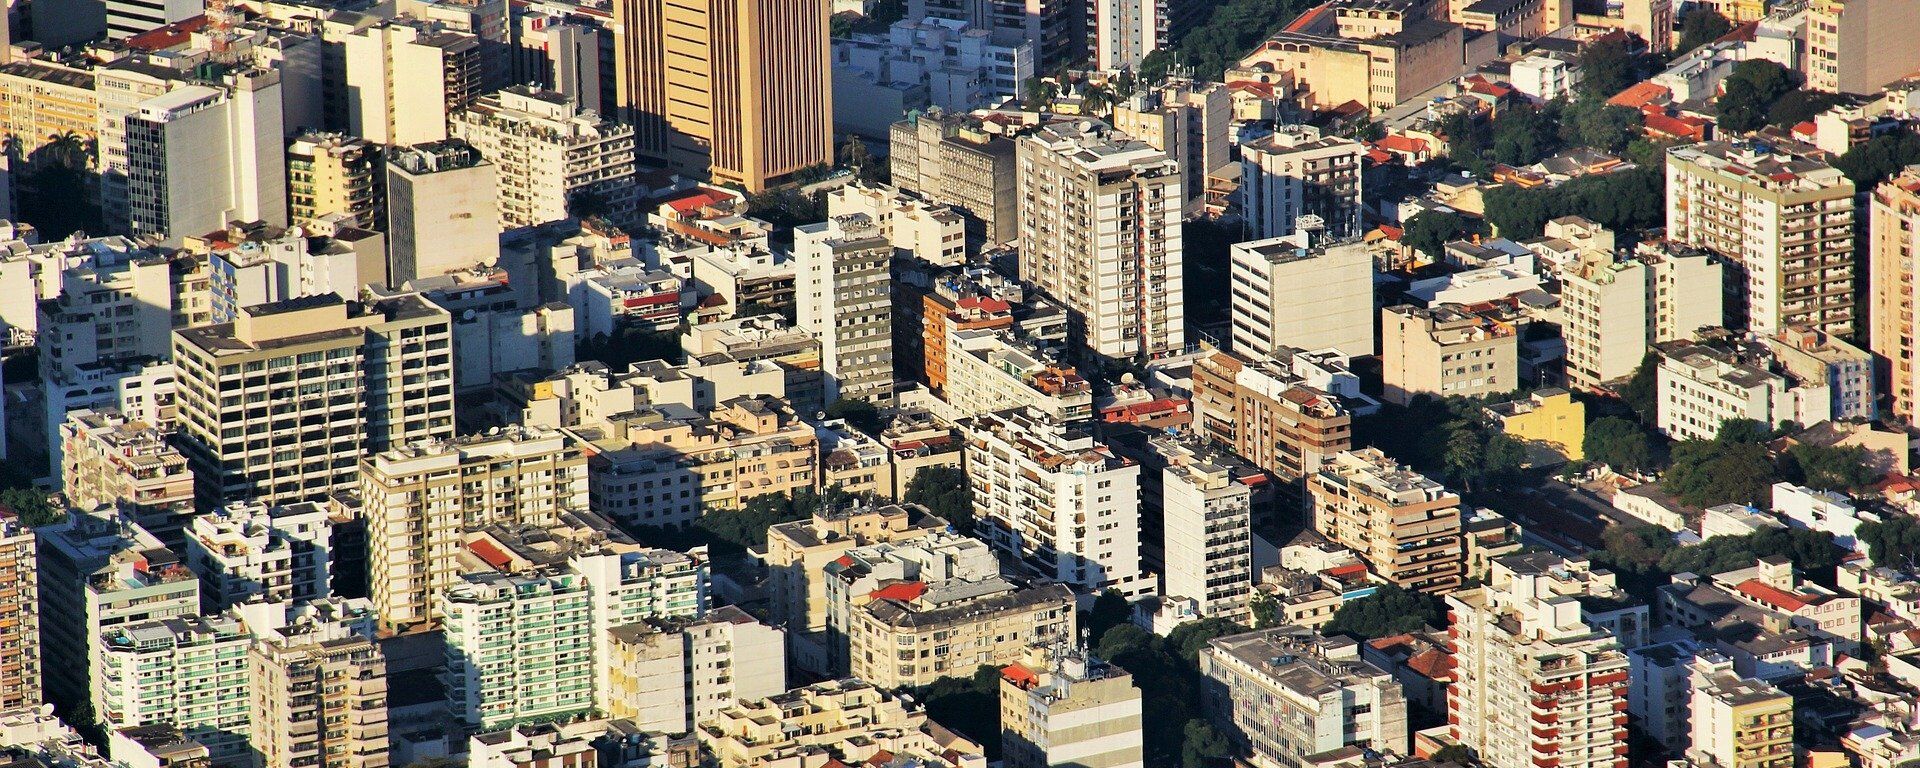 Río de Janeiro, la segunda ciudad más poblada de Brasil - Sputnik Mundo, 1920, 18.03.2021